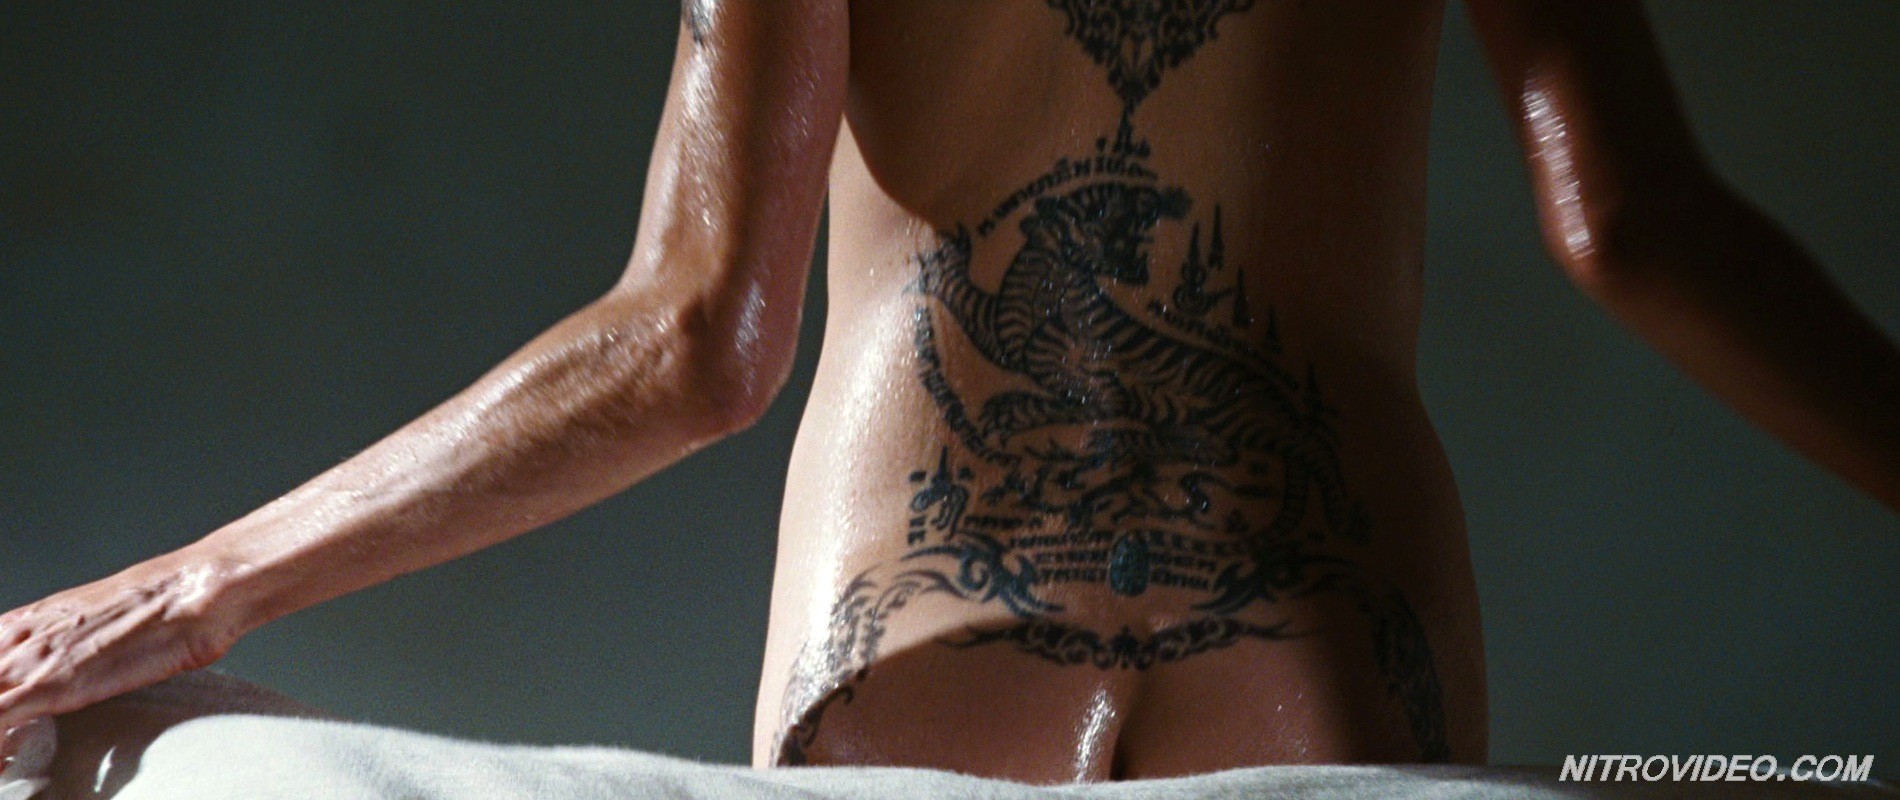 Angelina Jolie exposing her hot tattooed body #70256228